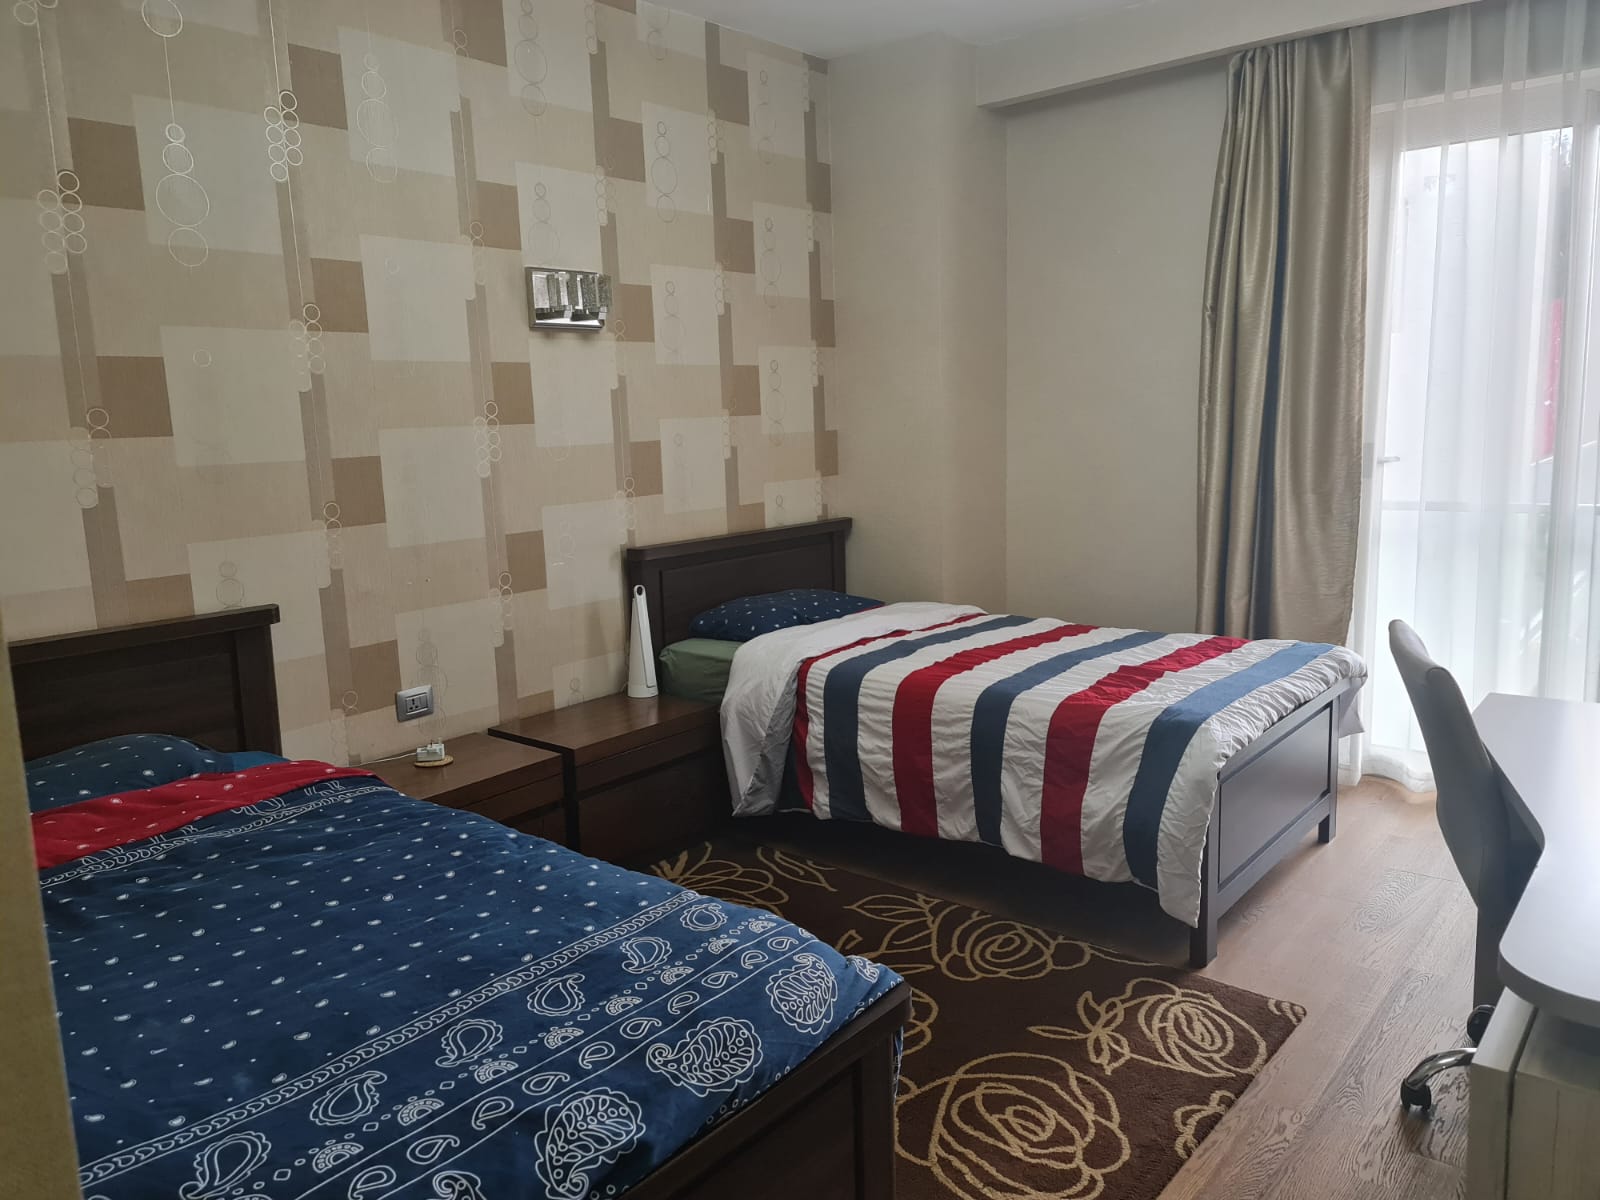 3 Bedroom all en-suite tastefully furnished apartment in kileleshwa to let at Kshs300k (26)